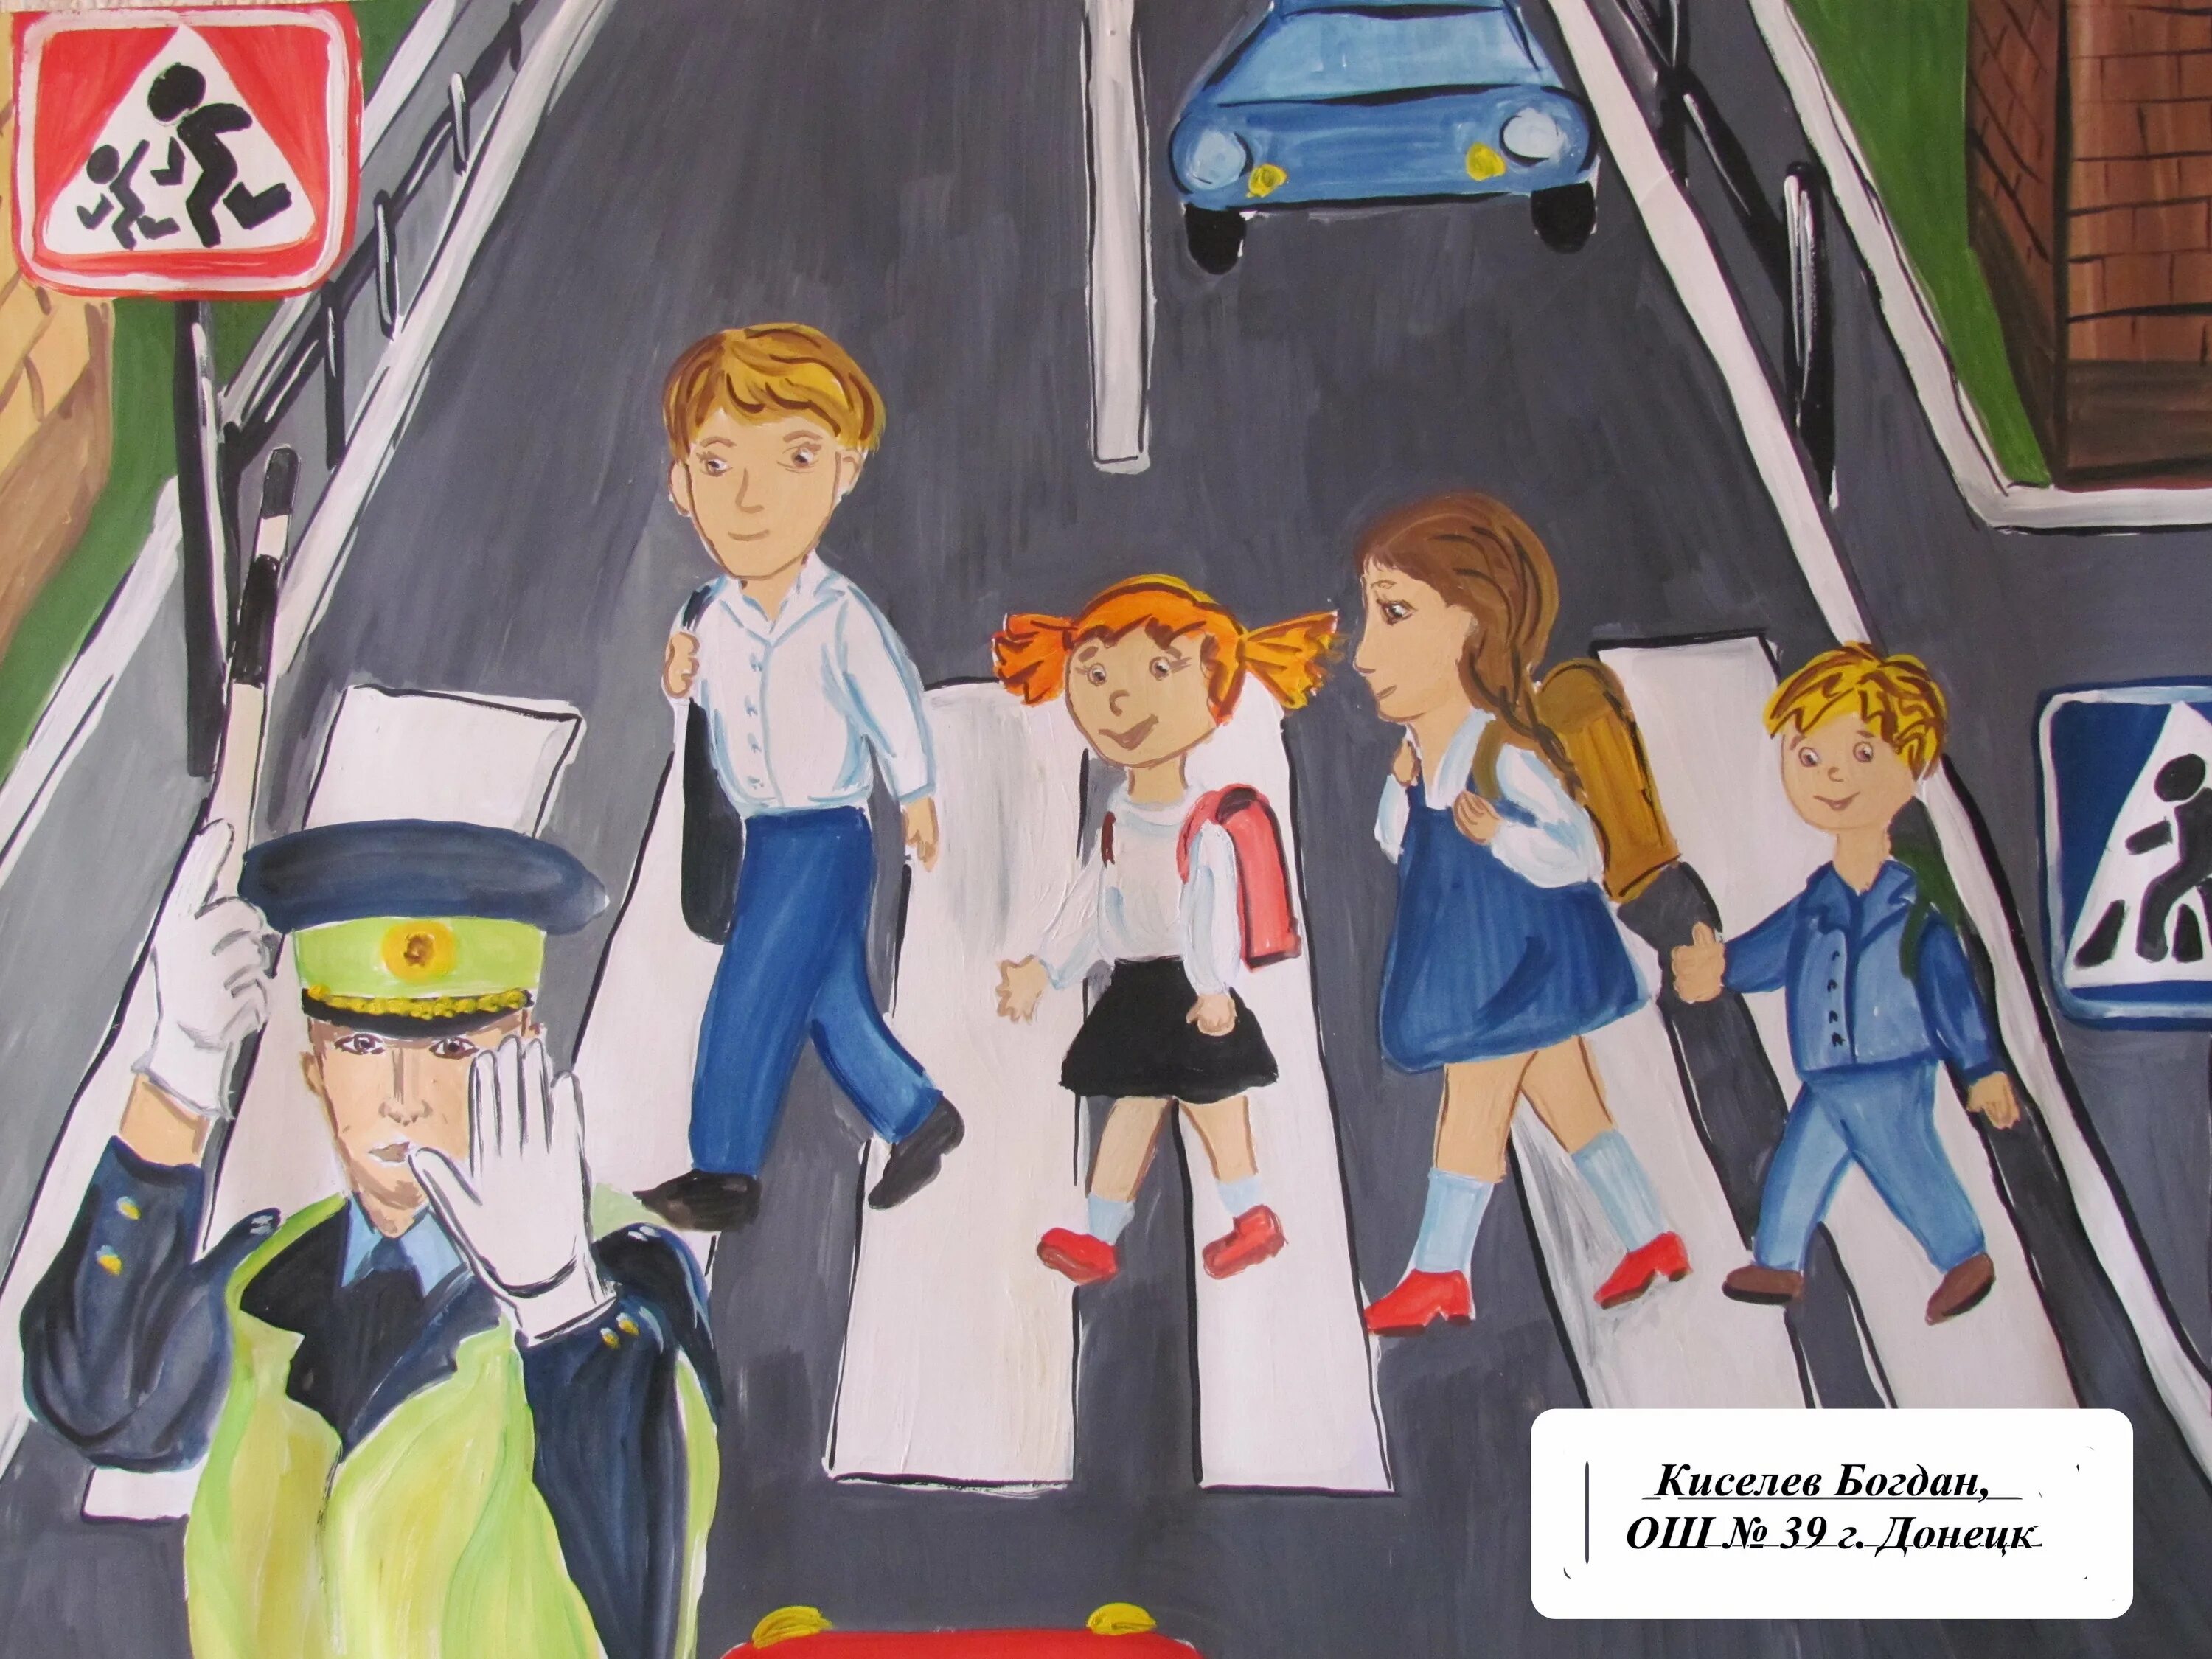 Безопасность тема конкурса. Безопасность на дороге глазами детей. Рисунок на тему безопасная дорога. Детские рисунки на тему ПДД. Конкурс рисунков дорога безопасности.